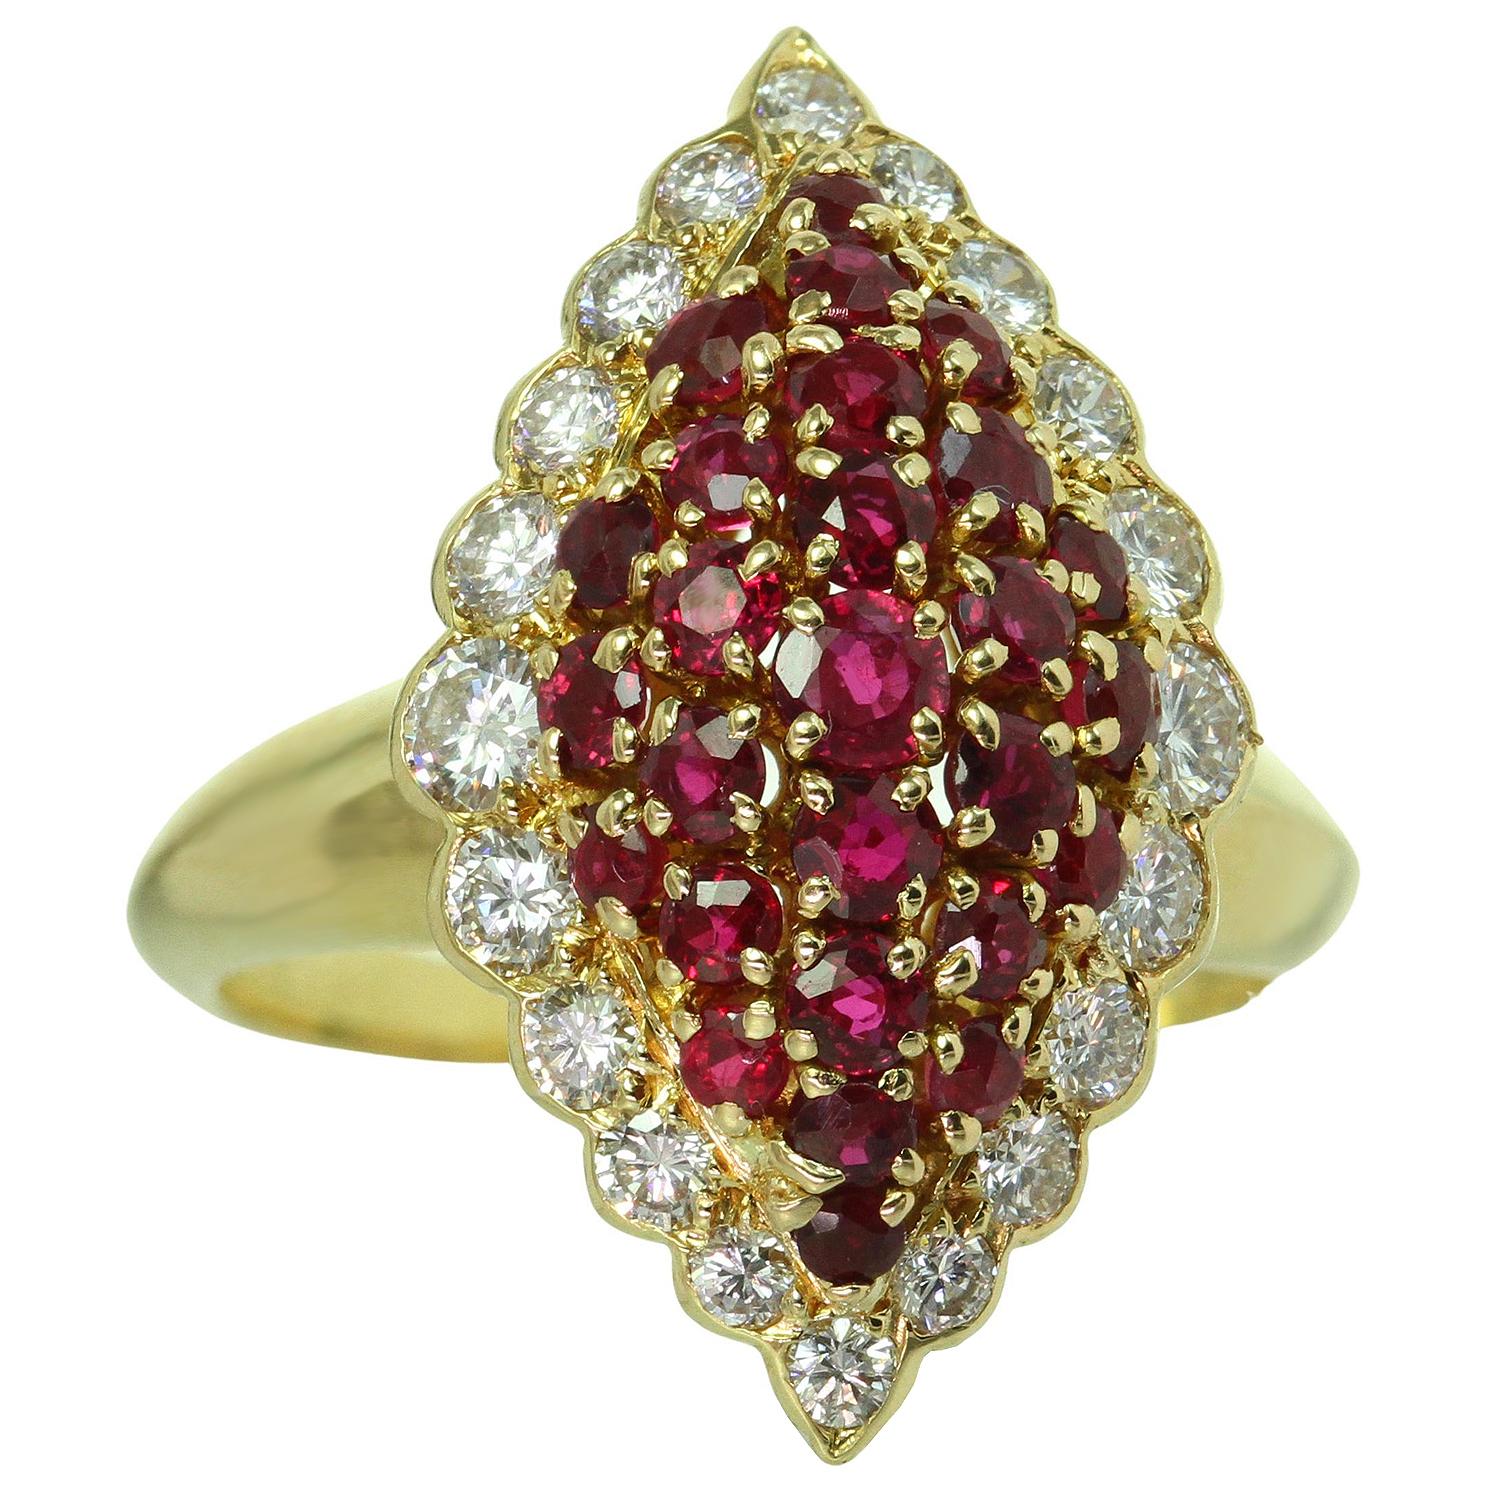 Dieser fabelhafte Ring von Van Cleef & Arpels ist aus 18 Karat Gelbgold gefertigt und verfügt über ein Marquise-Design, das mit runden roten Rubinen mit einem geschätzten Gewicht von 1,29 Karat und runden Diamanten im Brillantschliff E-F VVS1-VVS2